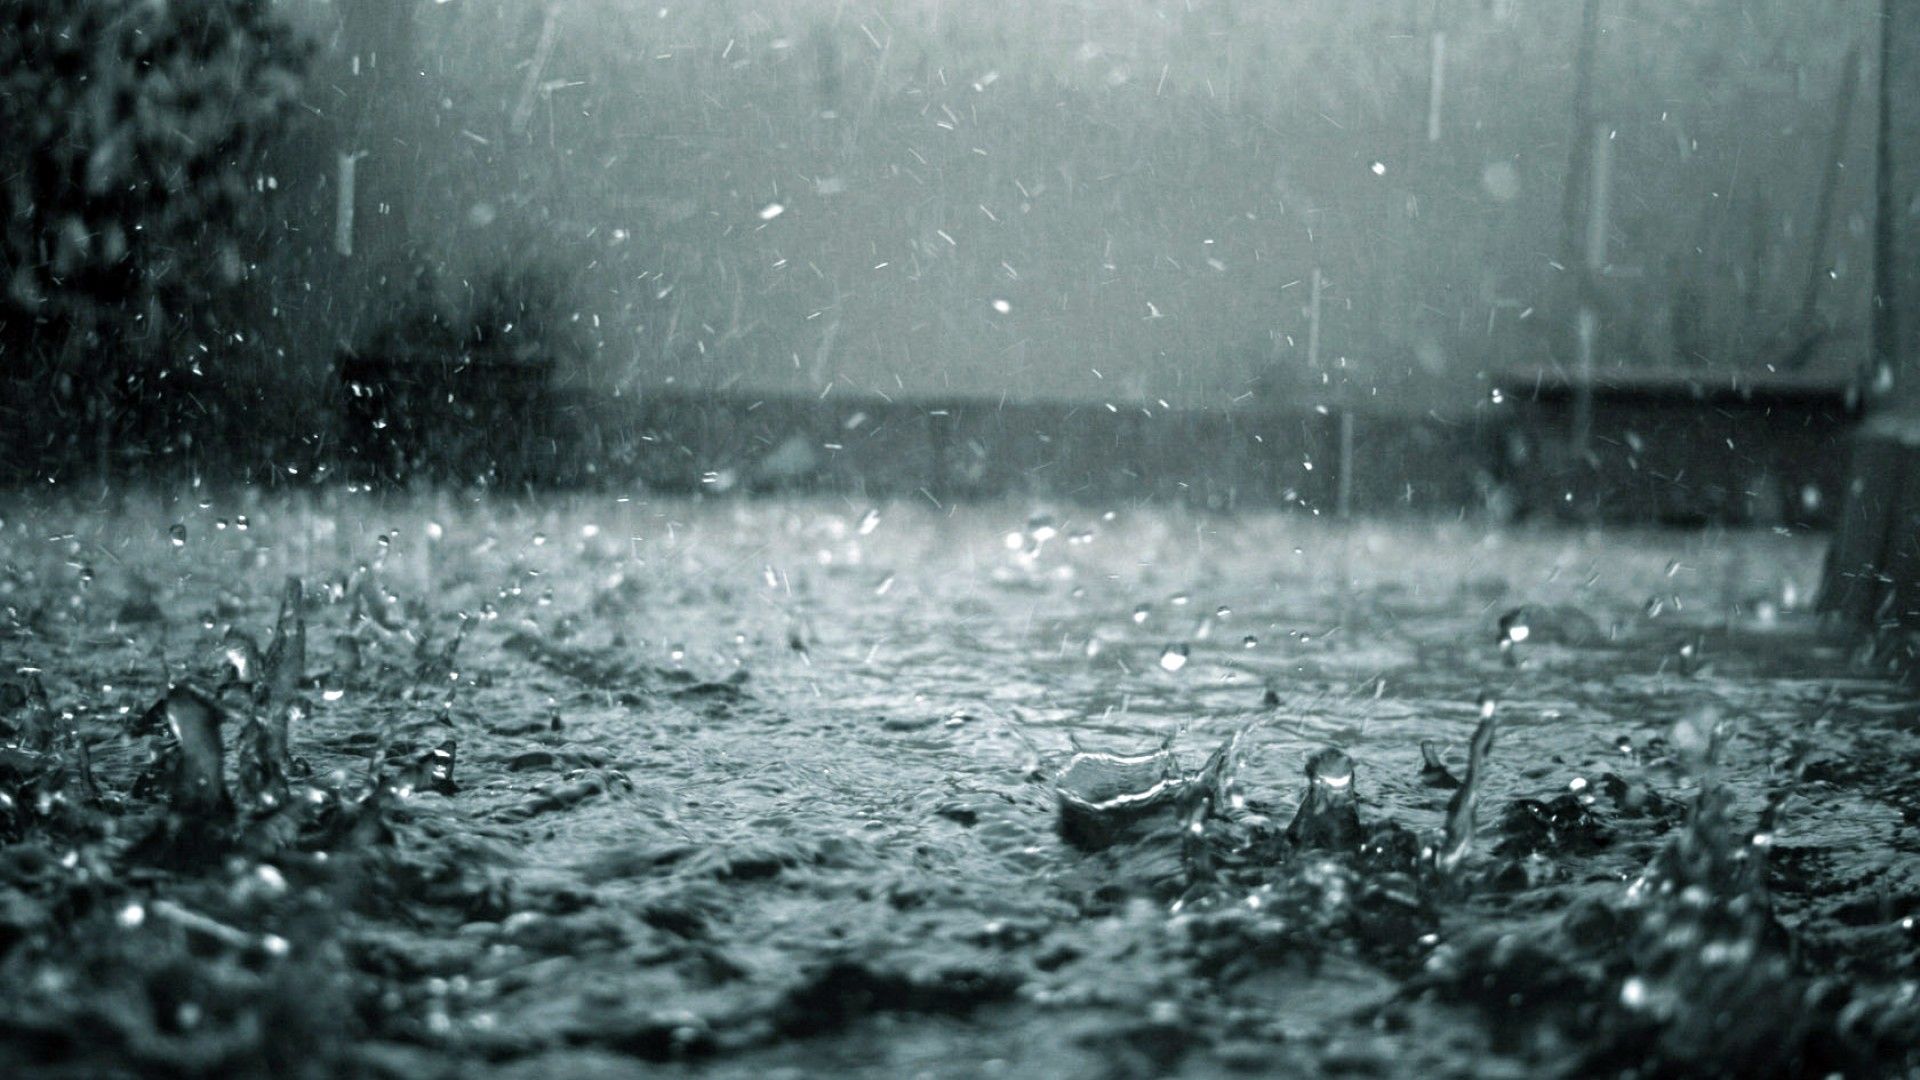 1725922 hình ảnh về trời mưa buồn lãng mạn đẹp nhất cho thiết kế của bạn    Mua bán hình ảnh shutterstock giá rẻ chỉ từ 3000 đ trong 2 phút